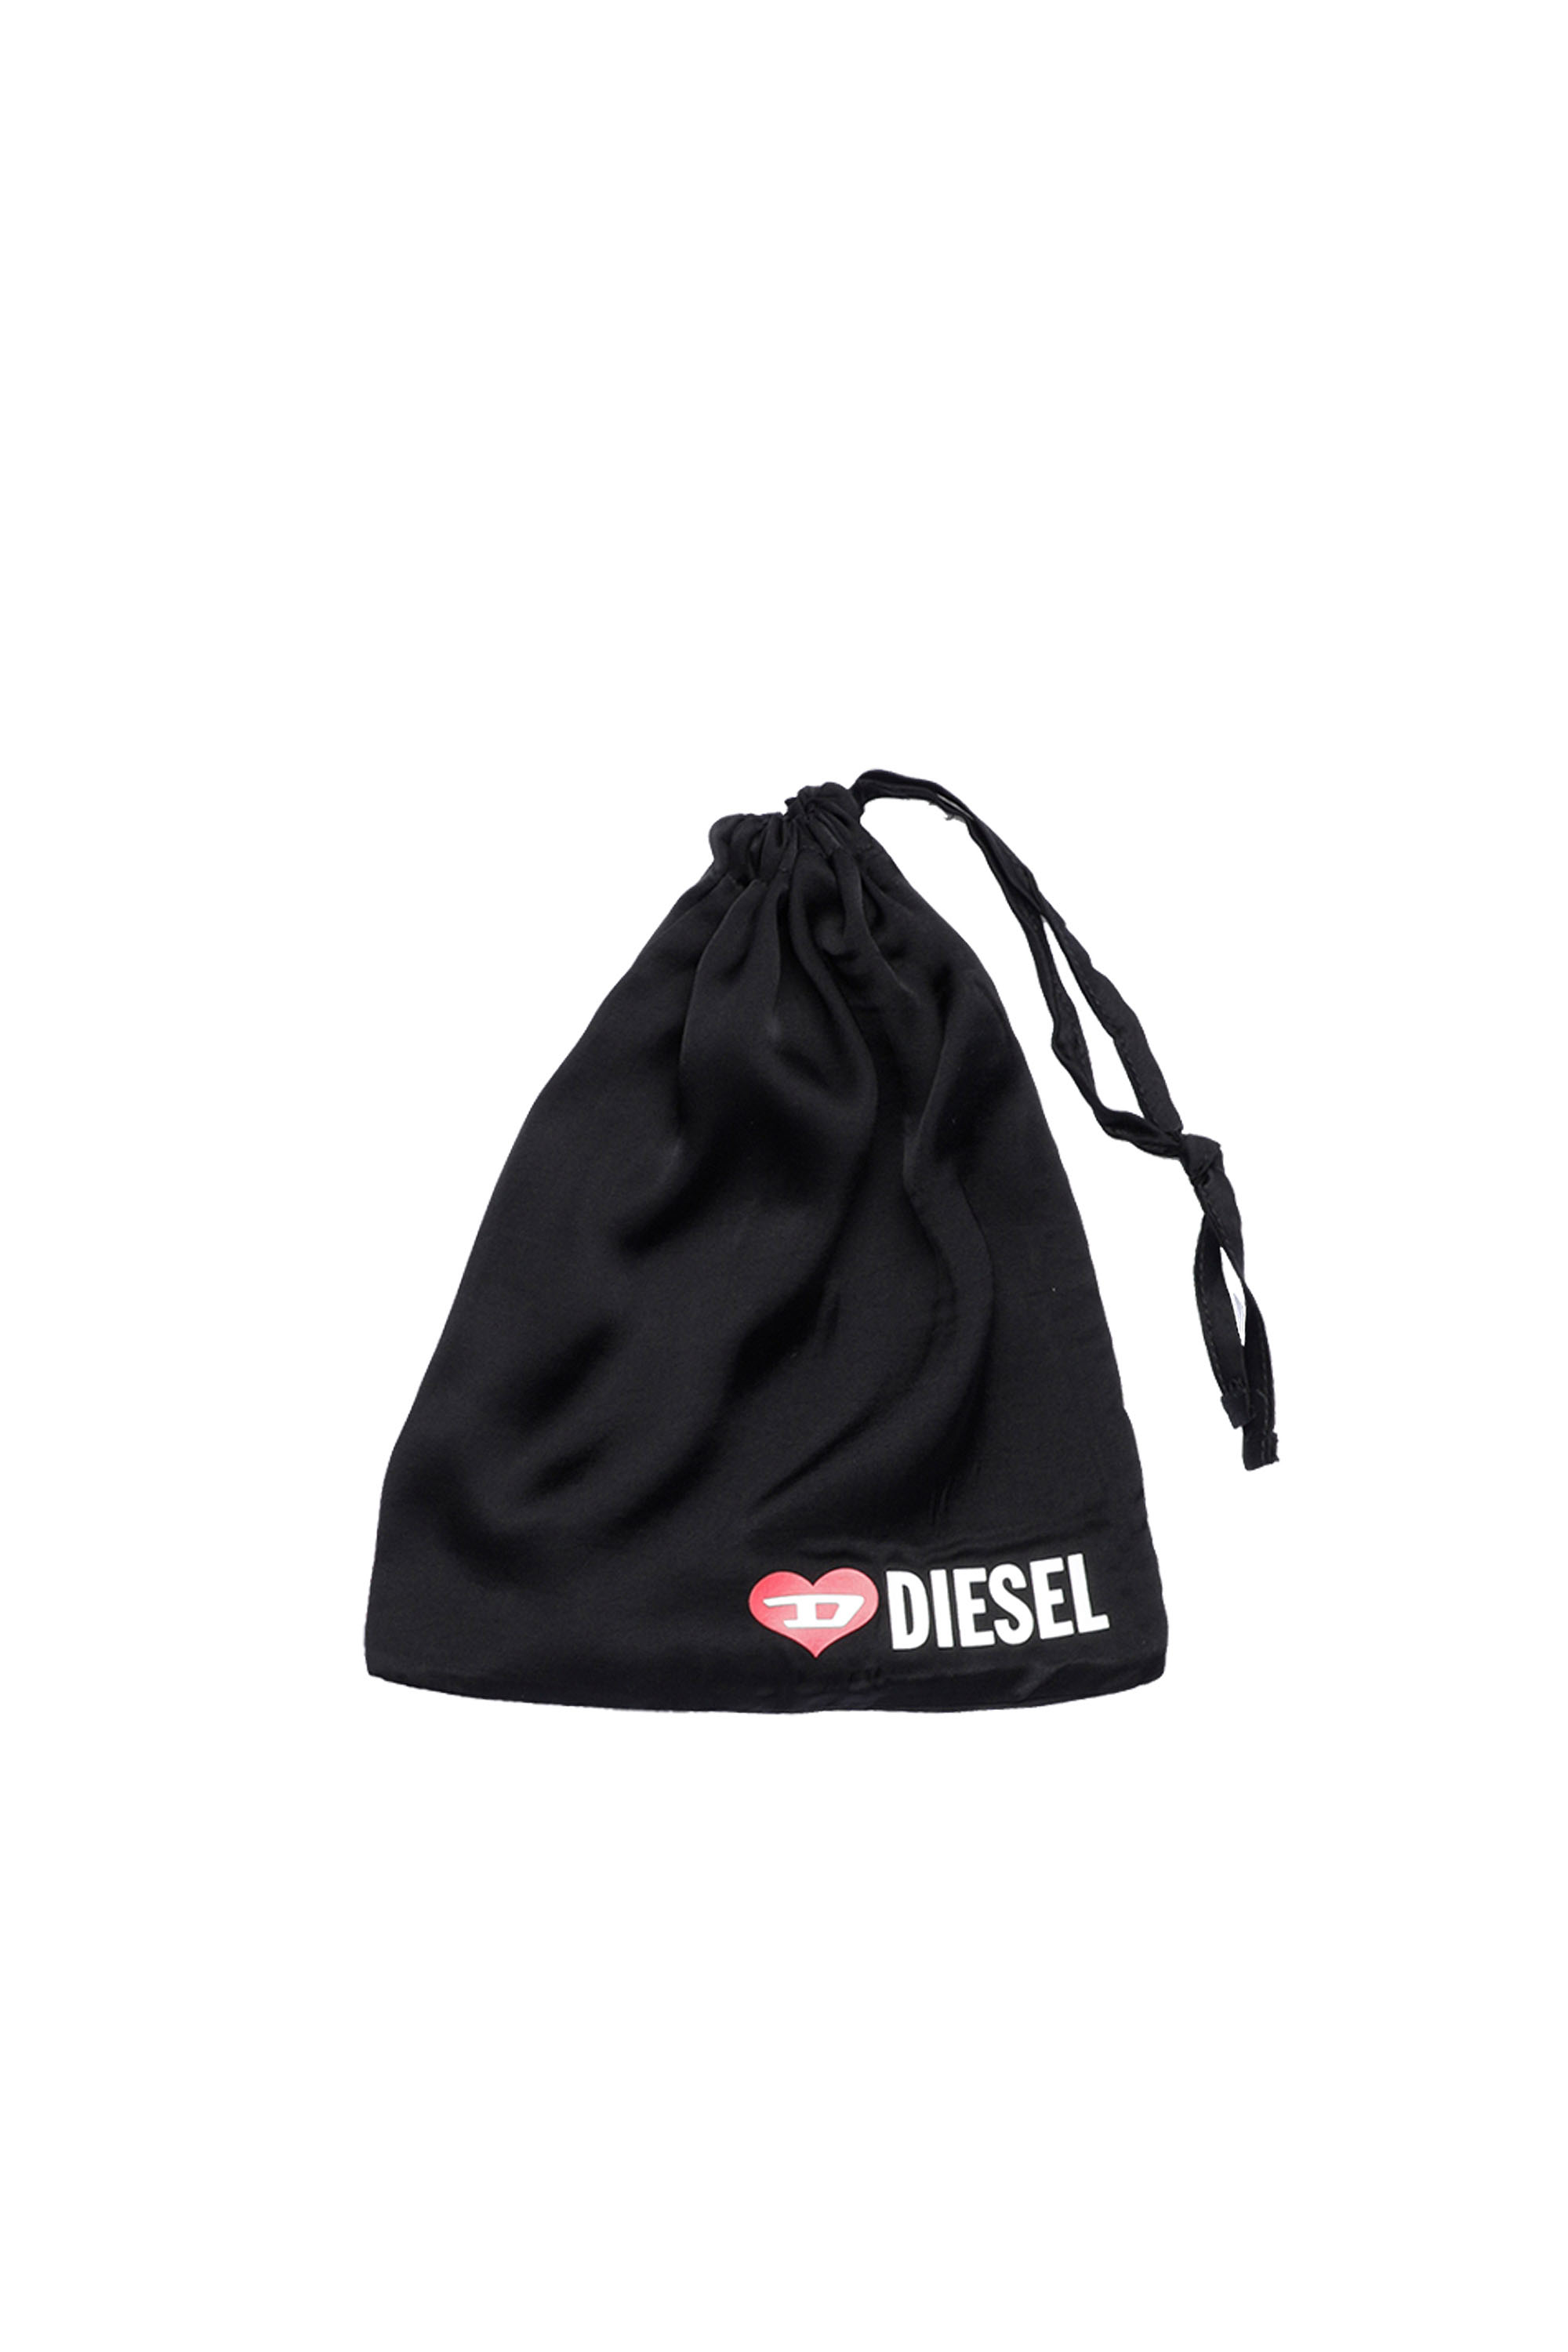 Diesel - UFSET-TANVAL, Black - Image 5